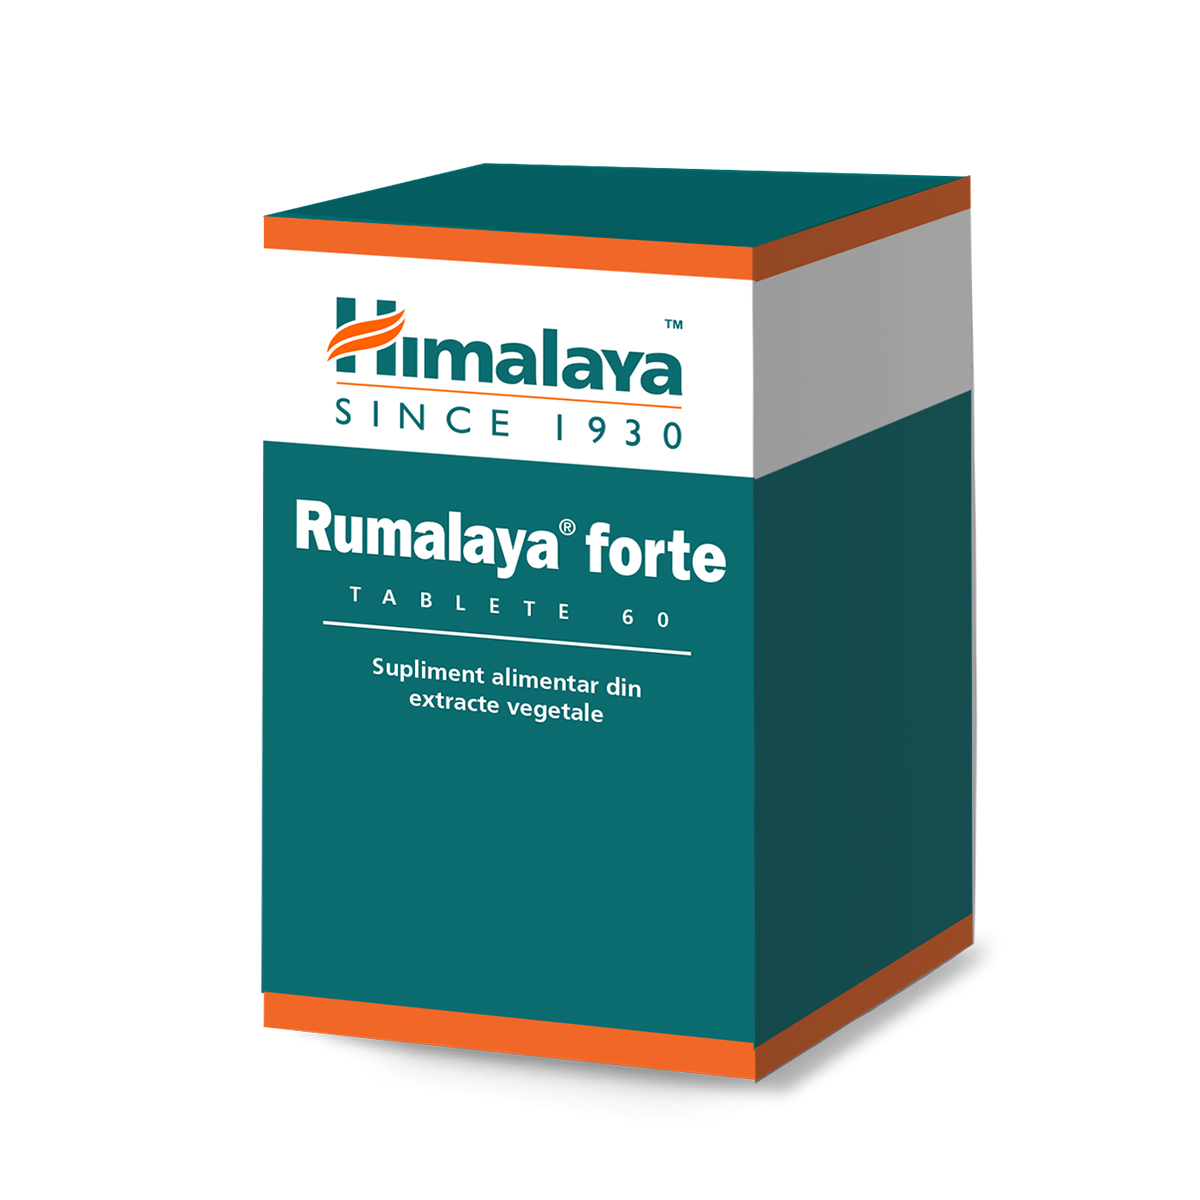 Reumatologie - Rumalaya forte, 60 tablete, Himalaya, sinapis.ro